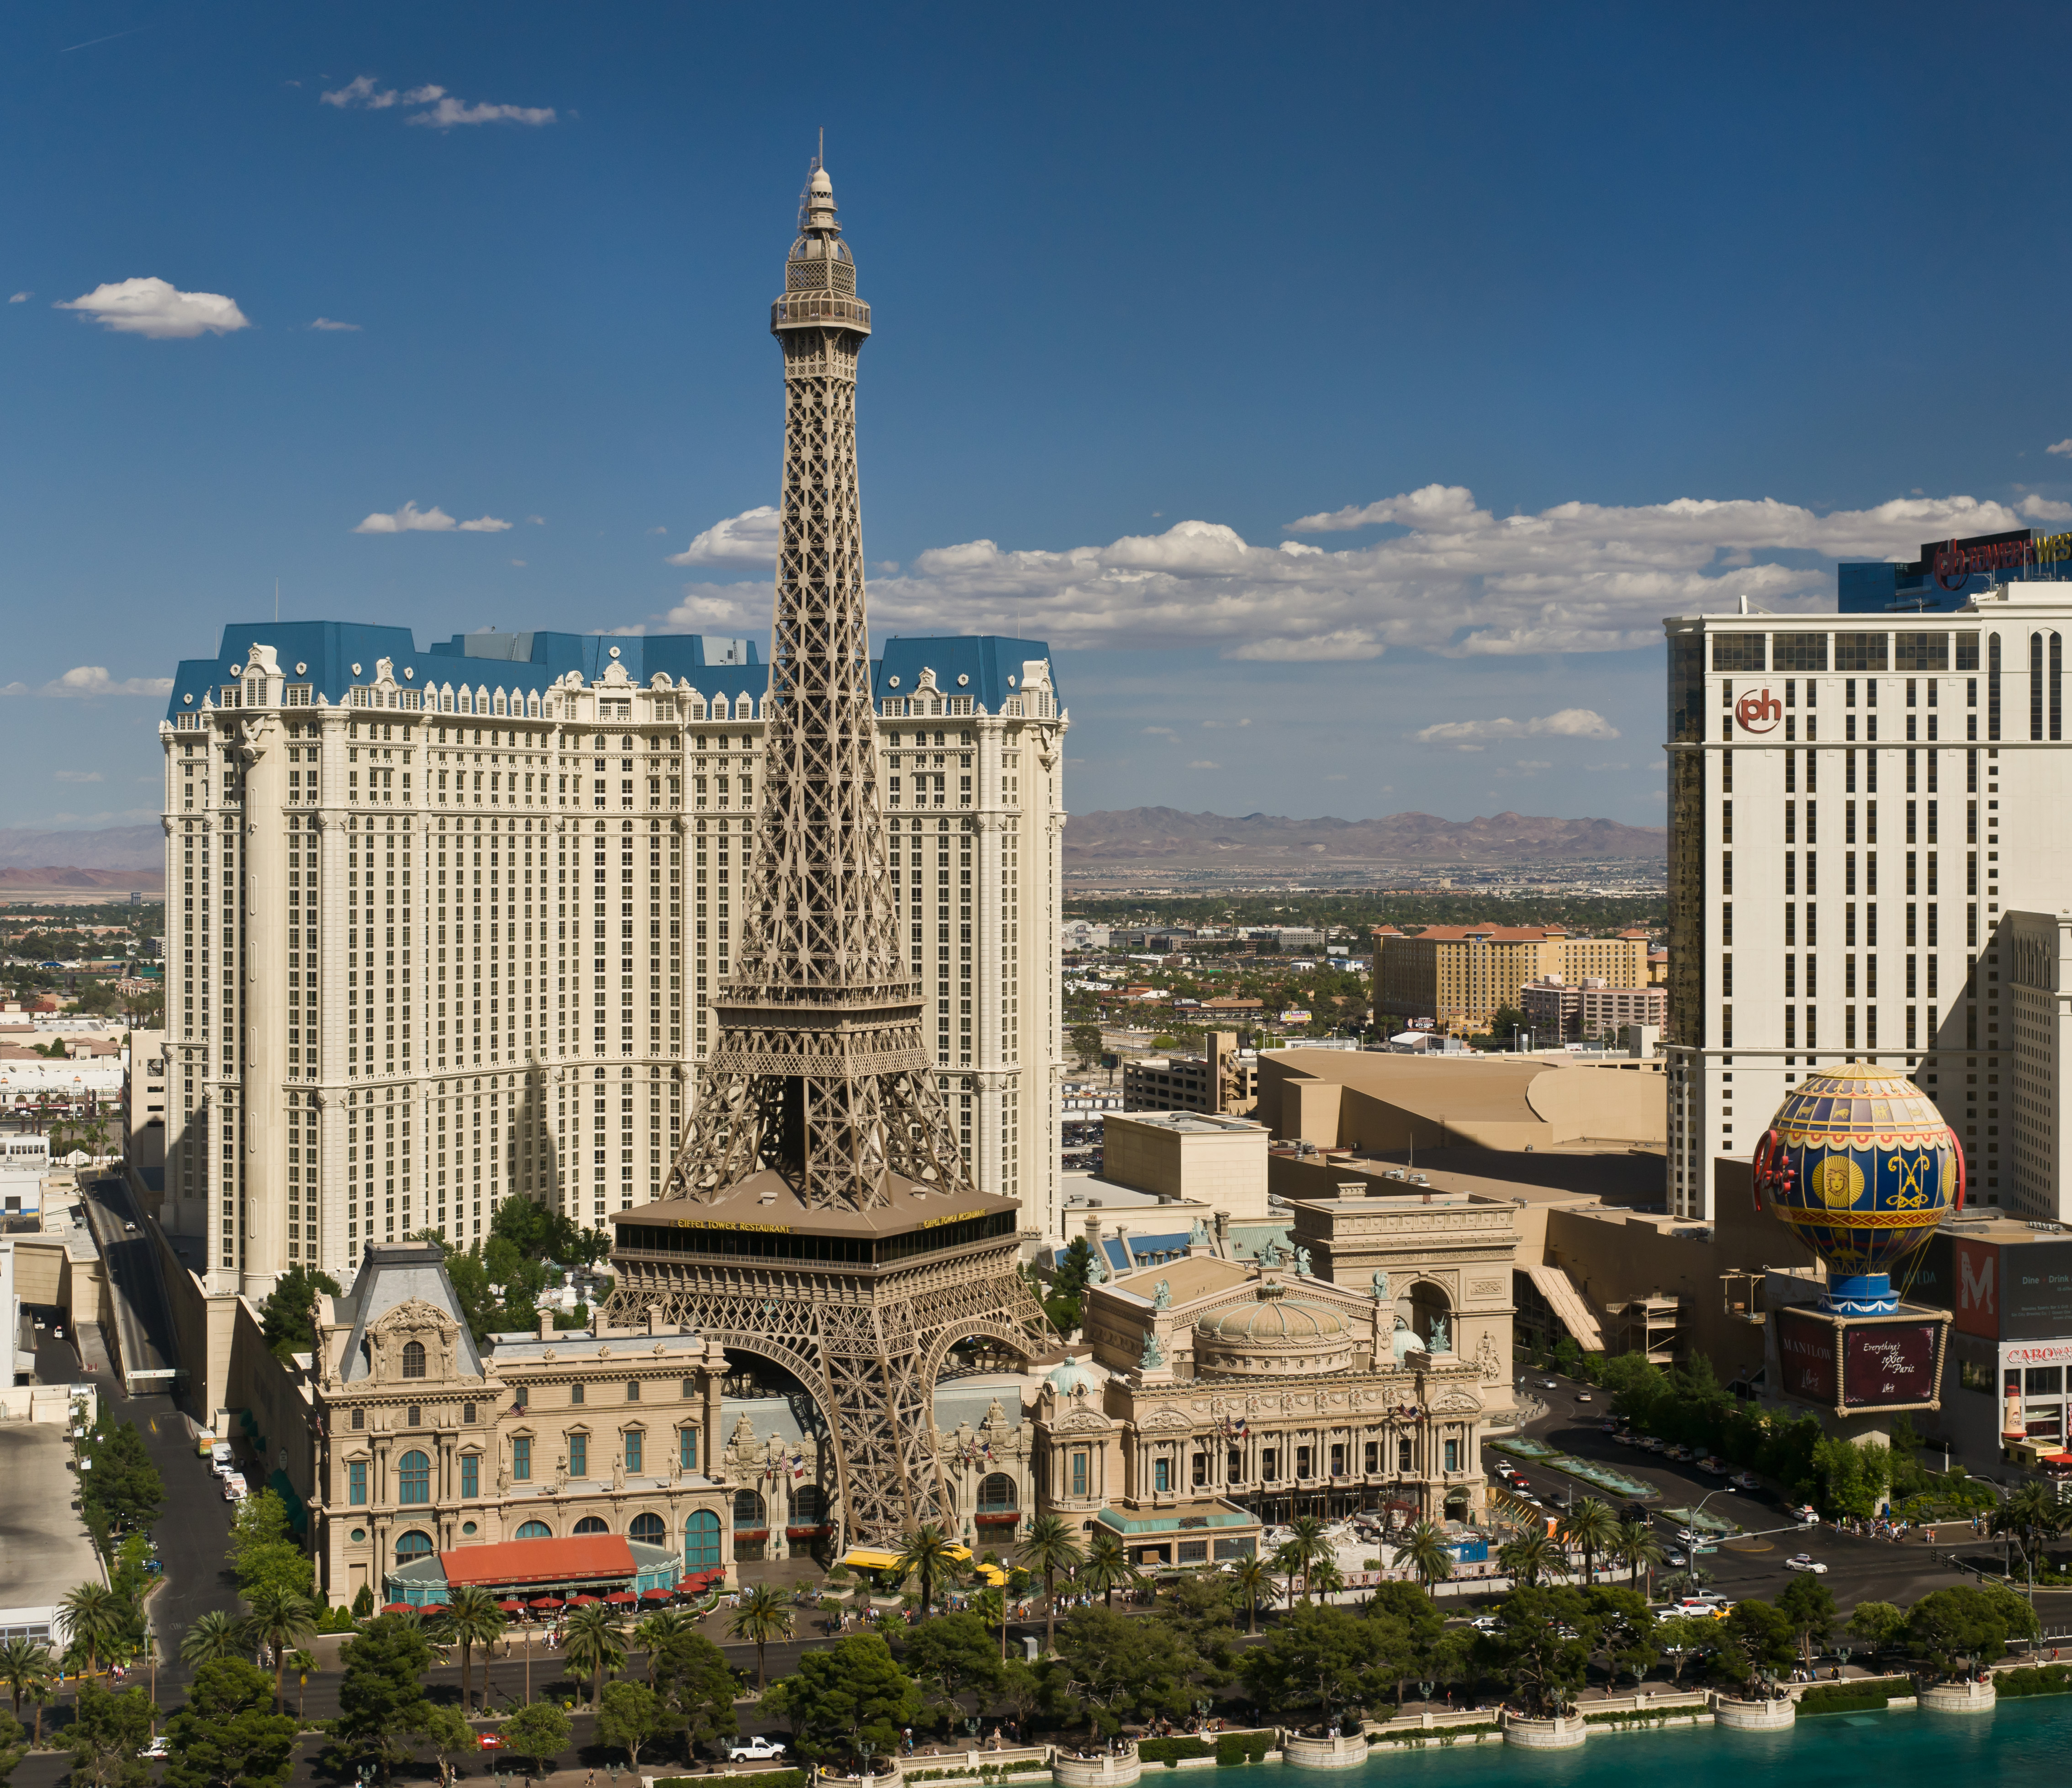 ファイル:The hotel Paris Las Vegas as seen from the hotel The Bellagio.jpg